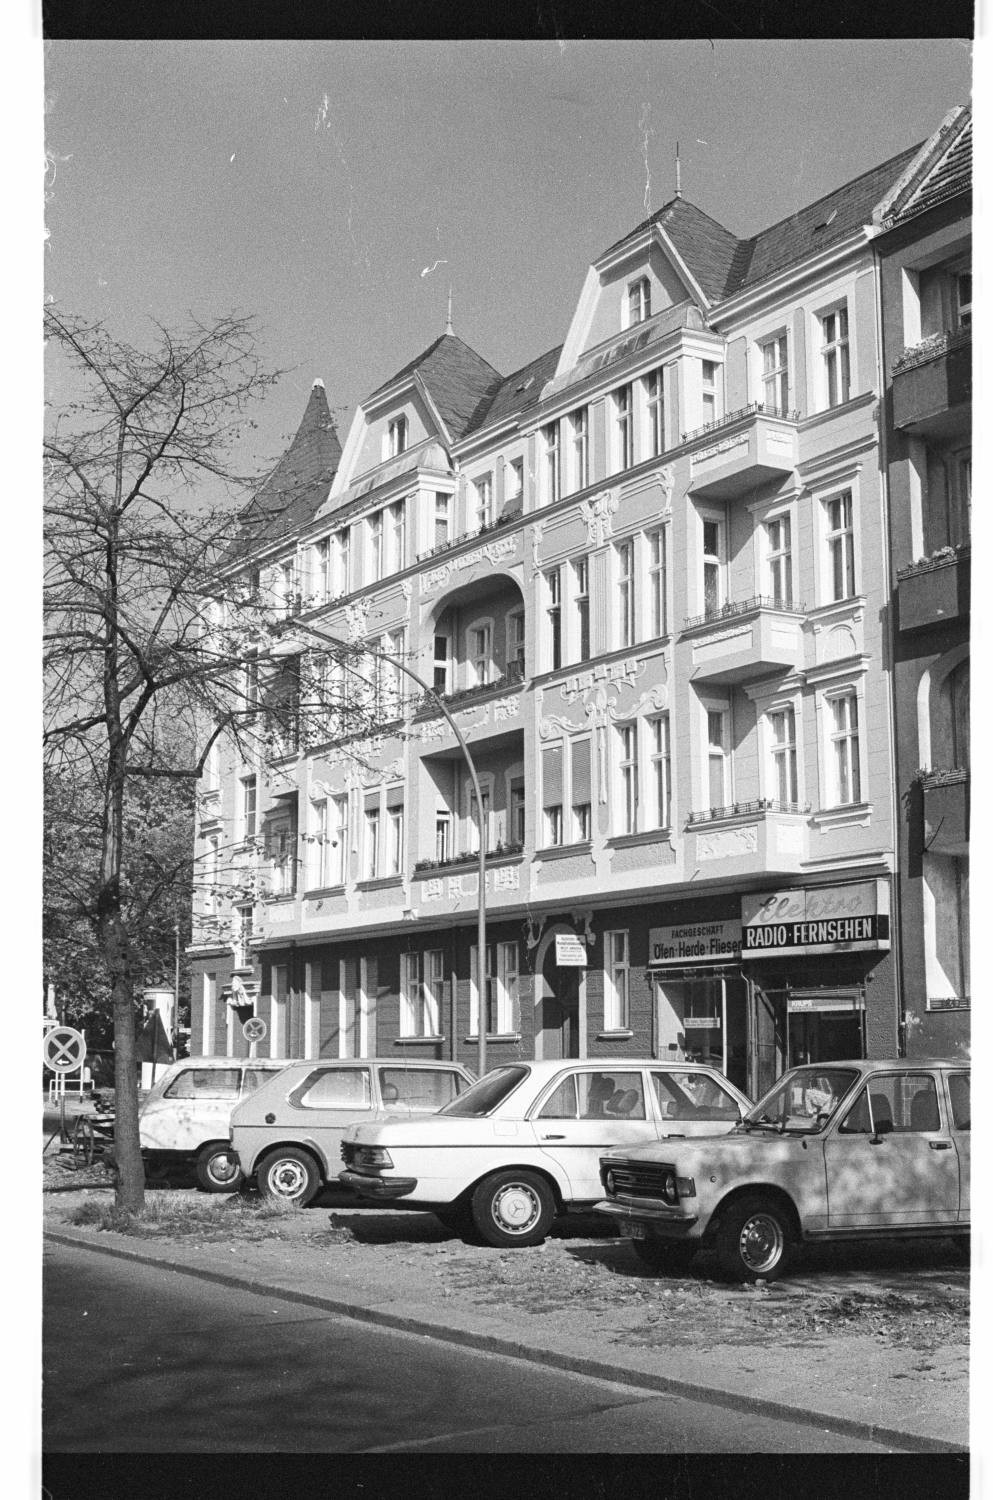 Kleinbildnegative: Mietshaus, Thorwaldsenstraße Ecke Peter-Vischer-Straße, 1979 (Museen Tempelhof-Schöneberg/Jürgen Henschel RR-F)